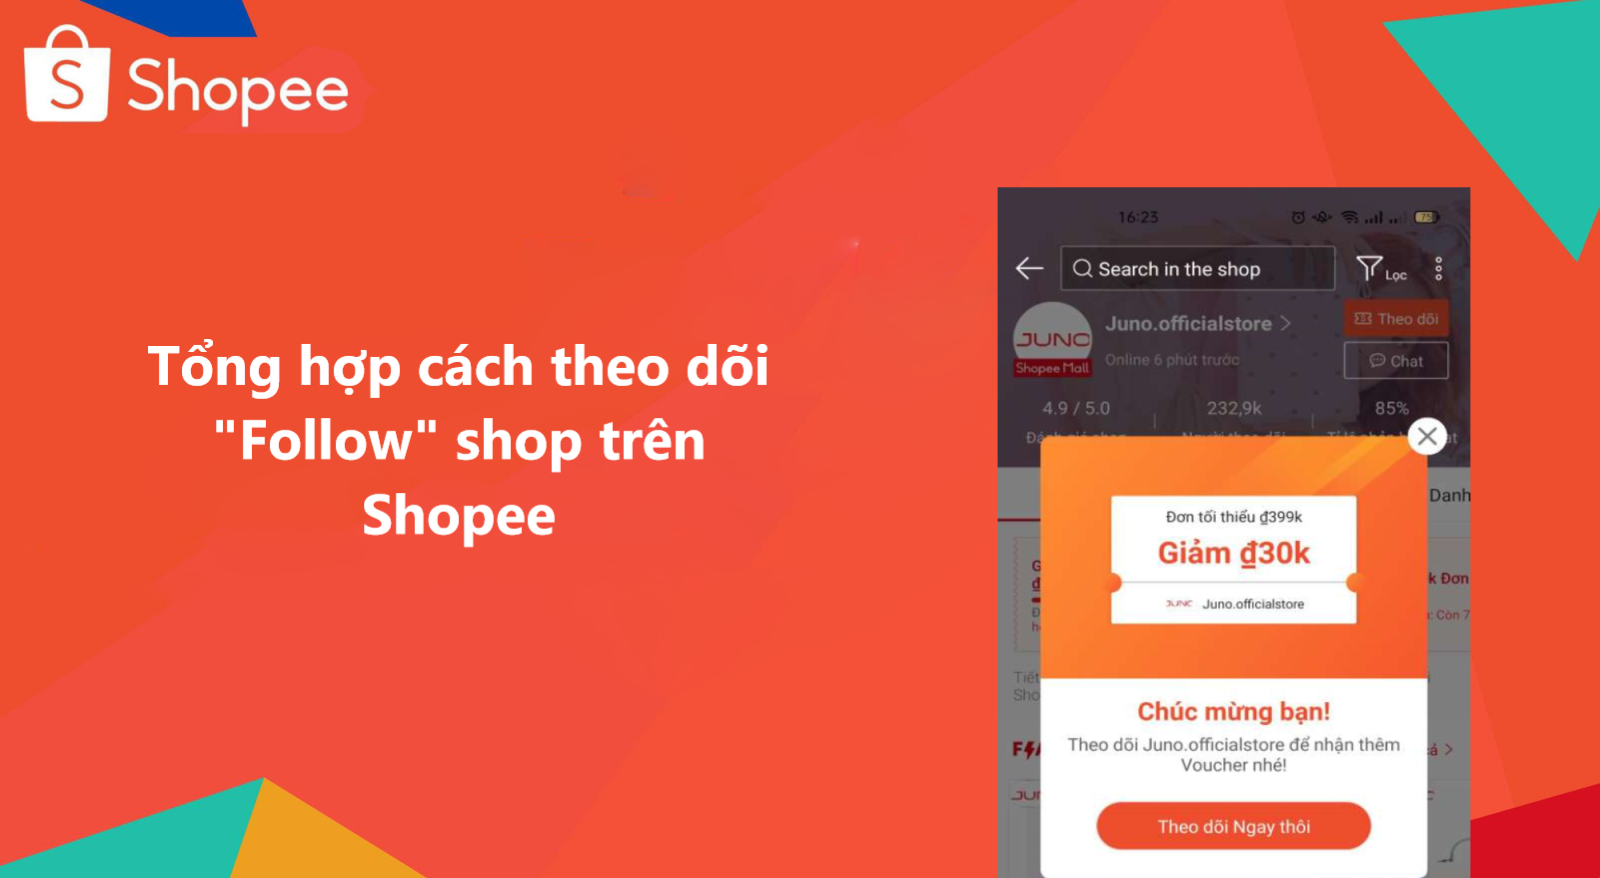 Tổng hợp cách theo dõi “Follow” shop trên Shopee 